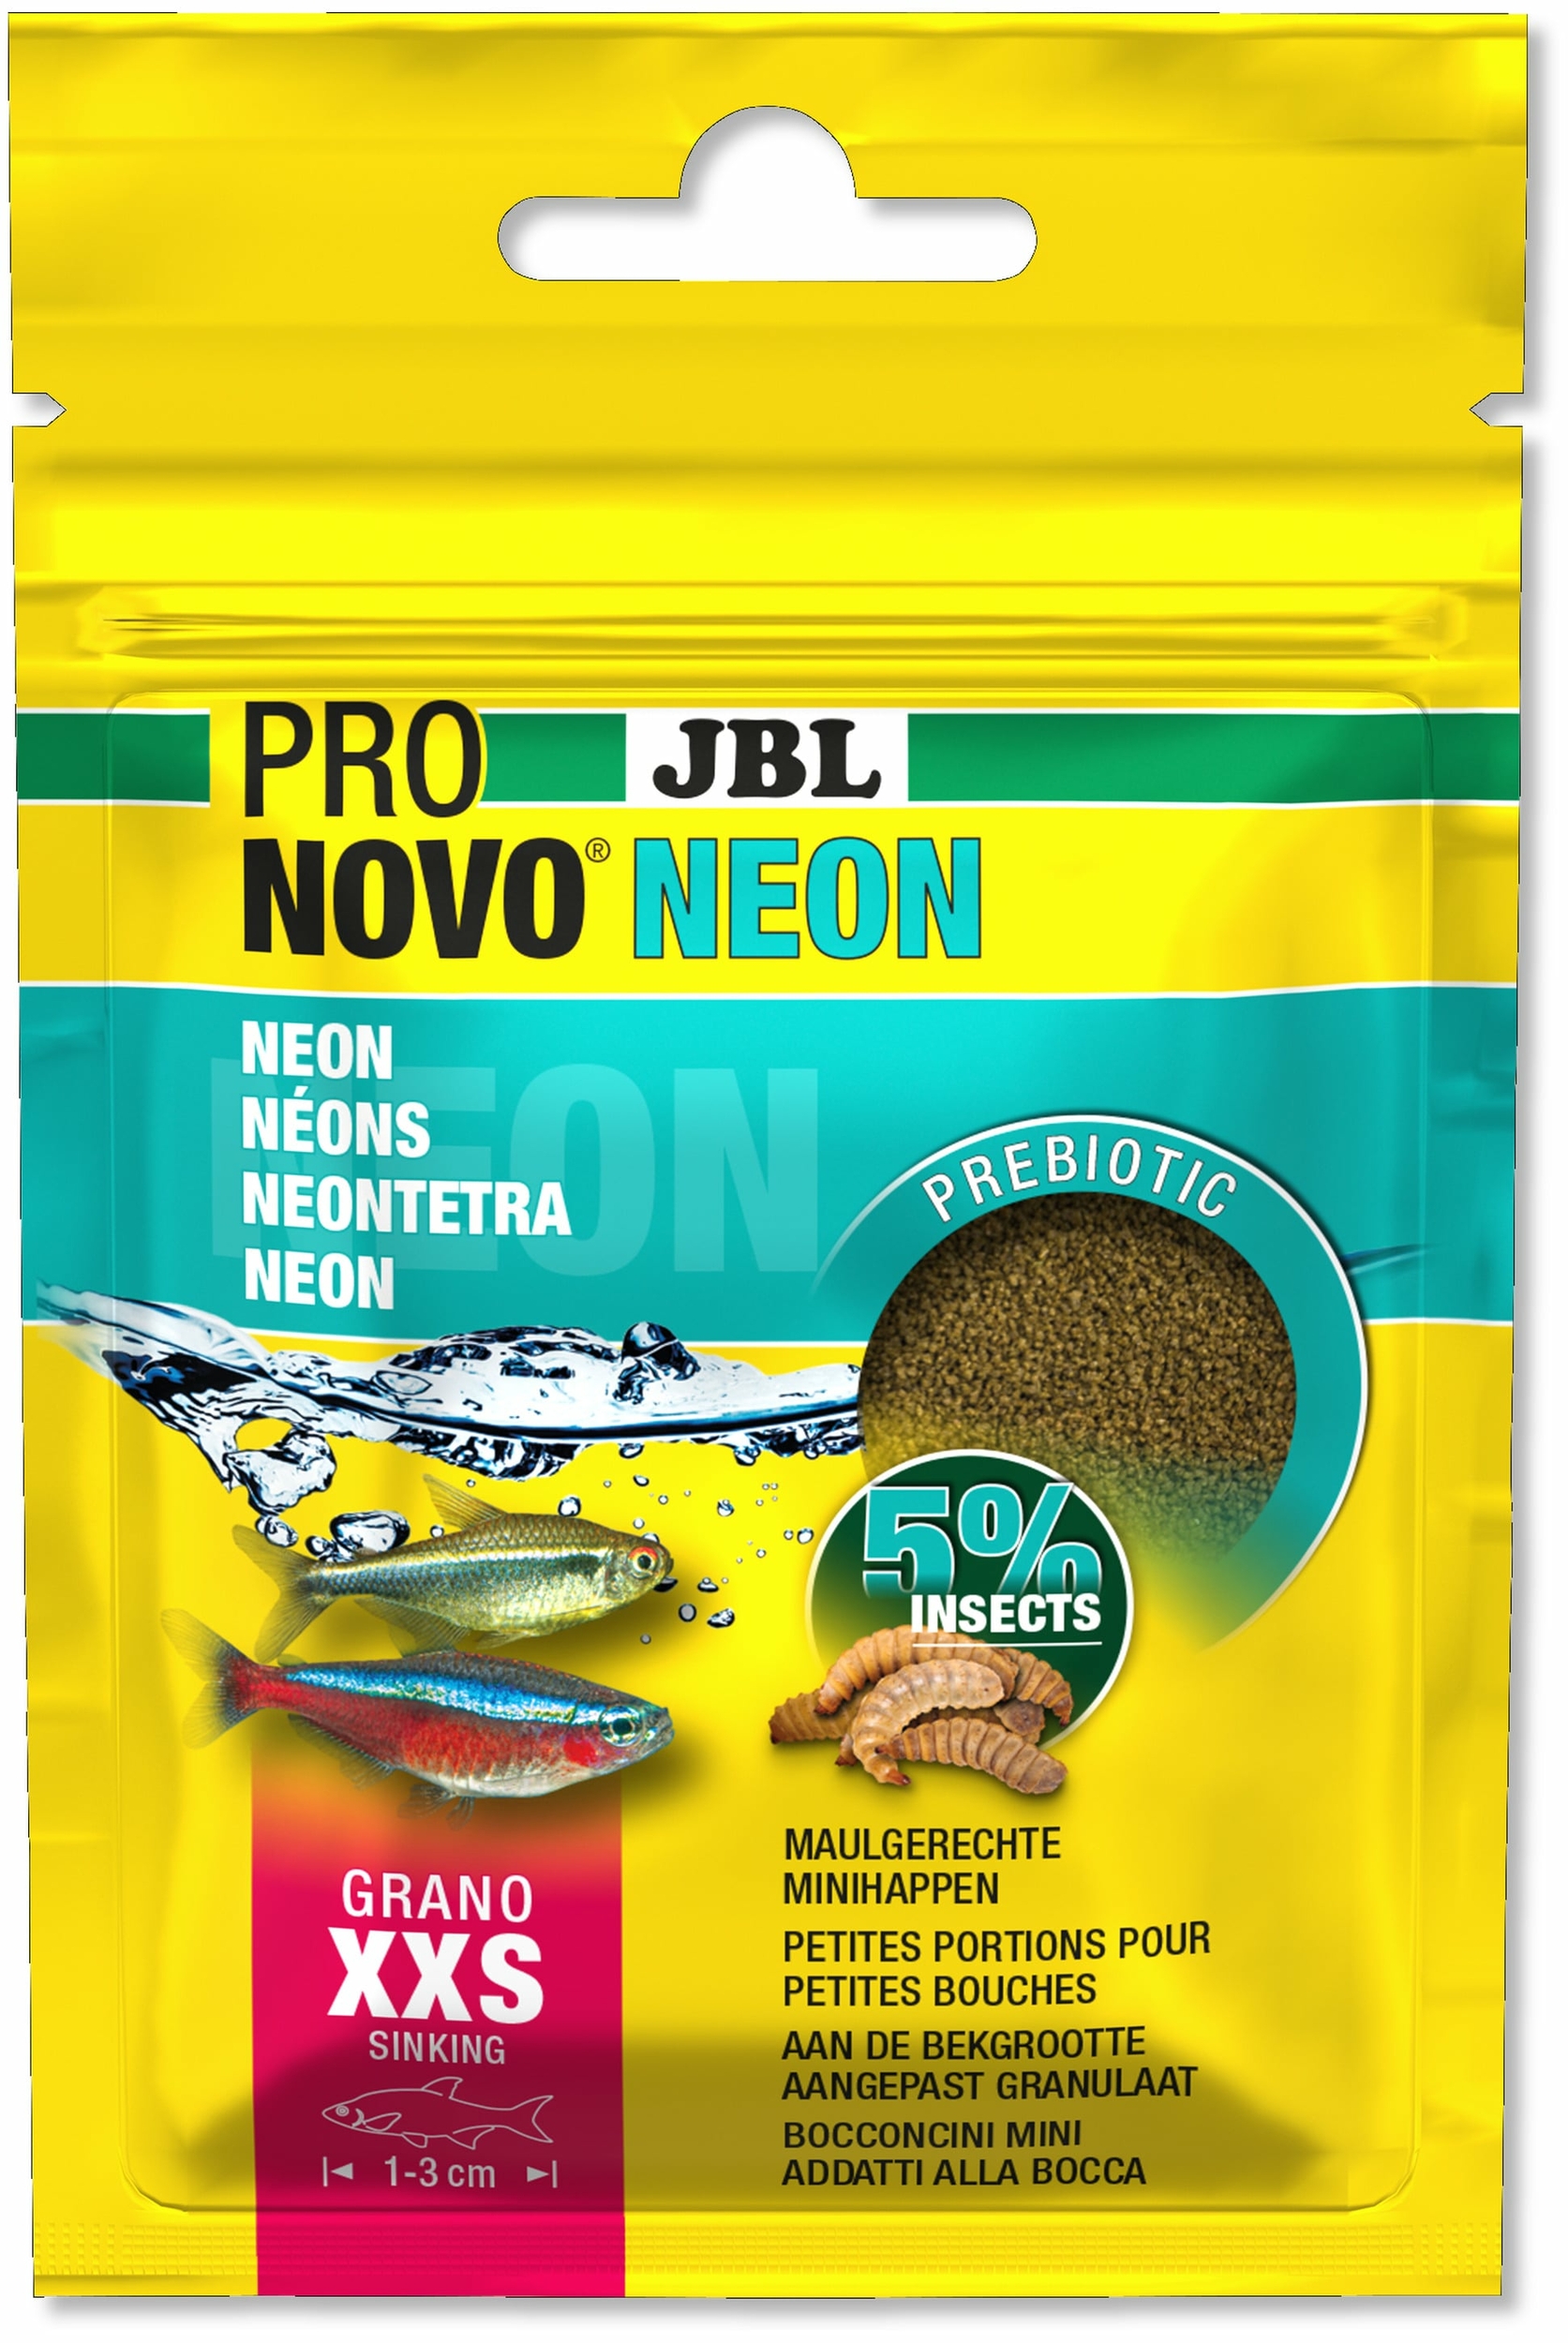 JBL ProNovo Neon Grano XXS 20 ml nourriture en granulés pour néons et autres petits characins de 1 à 3 cm